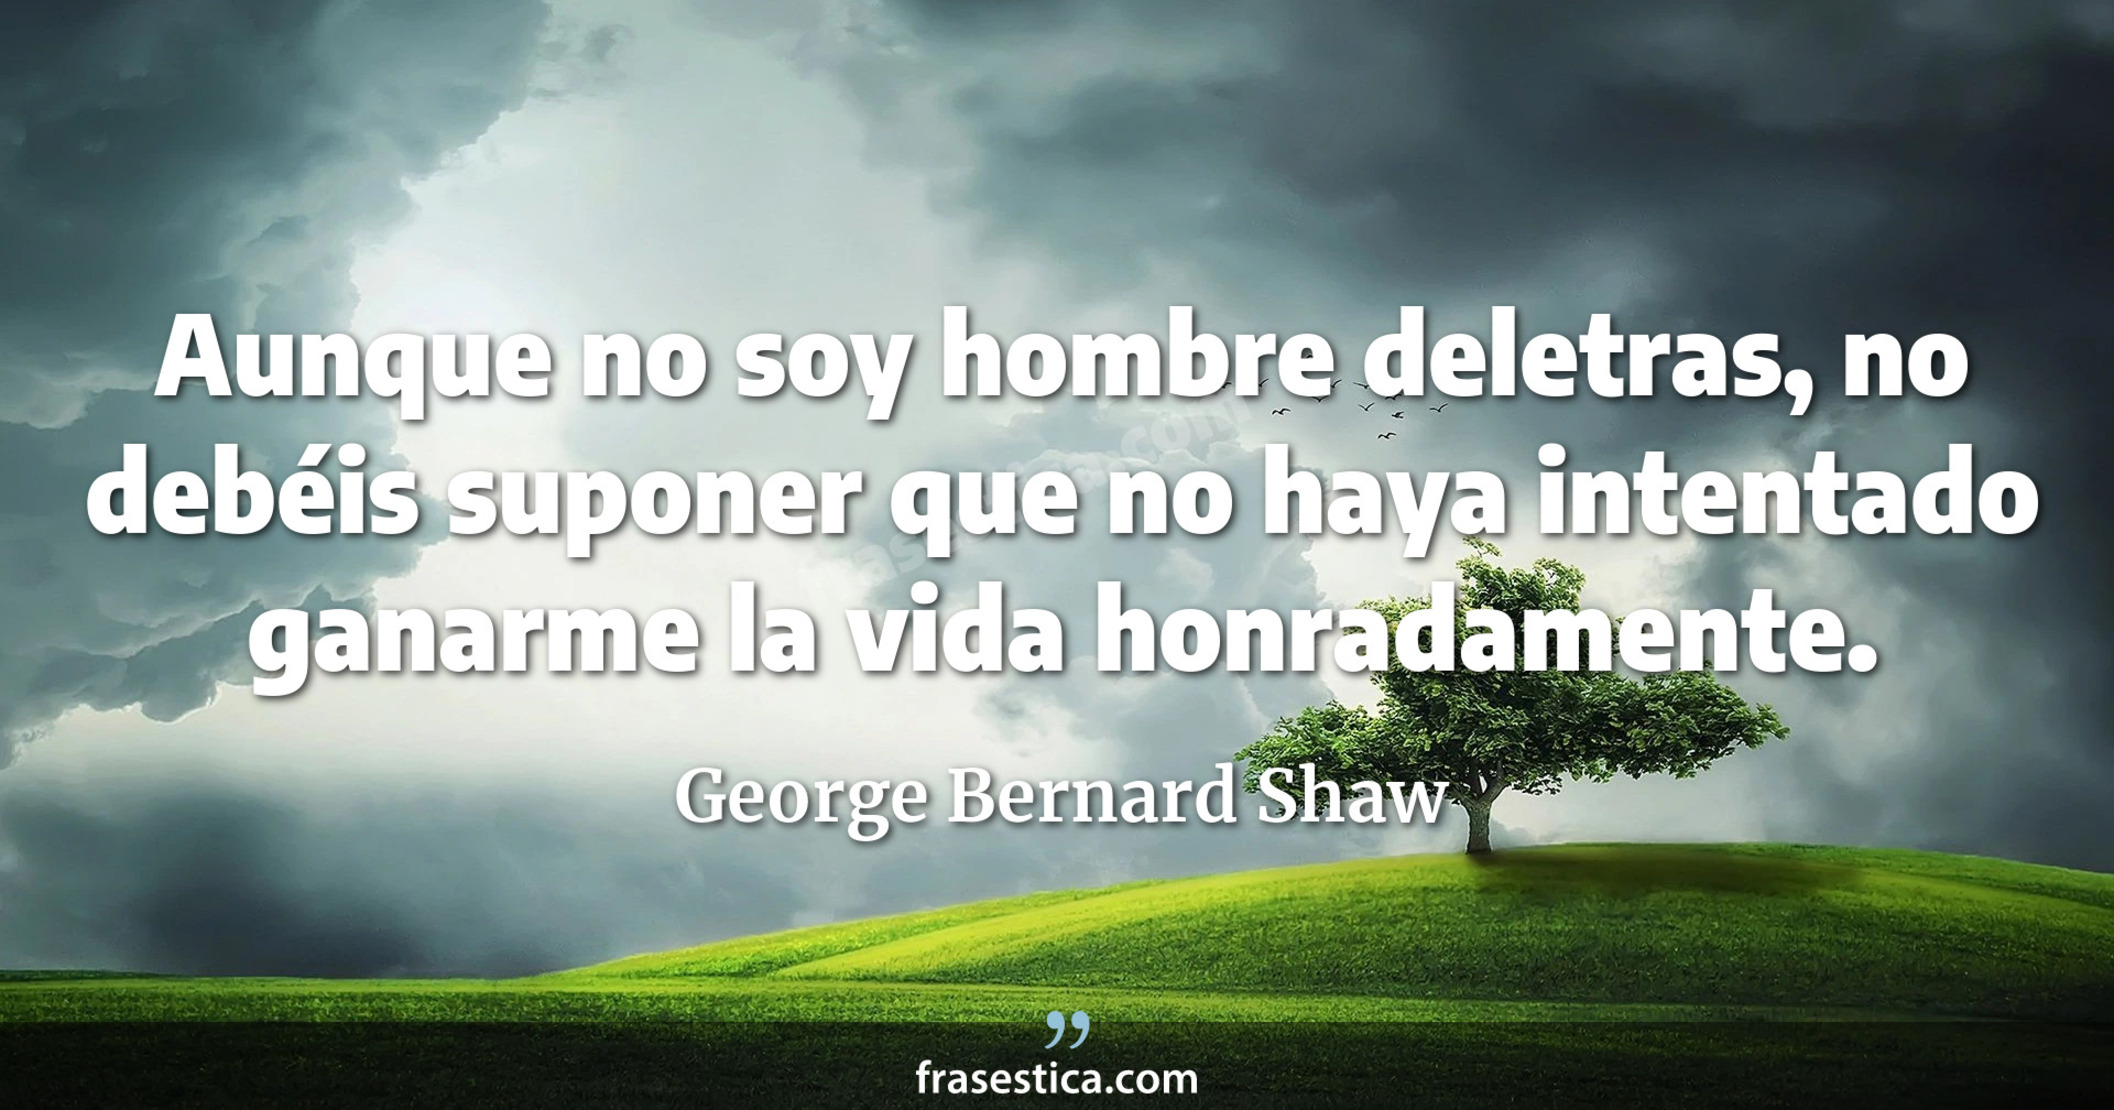 Aunque no soy hombre deletras, no debéis suponer que no haya intentado ganarme la vida honradamente. - George Bernard Shaw